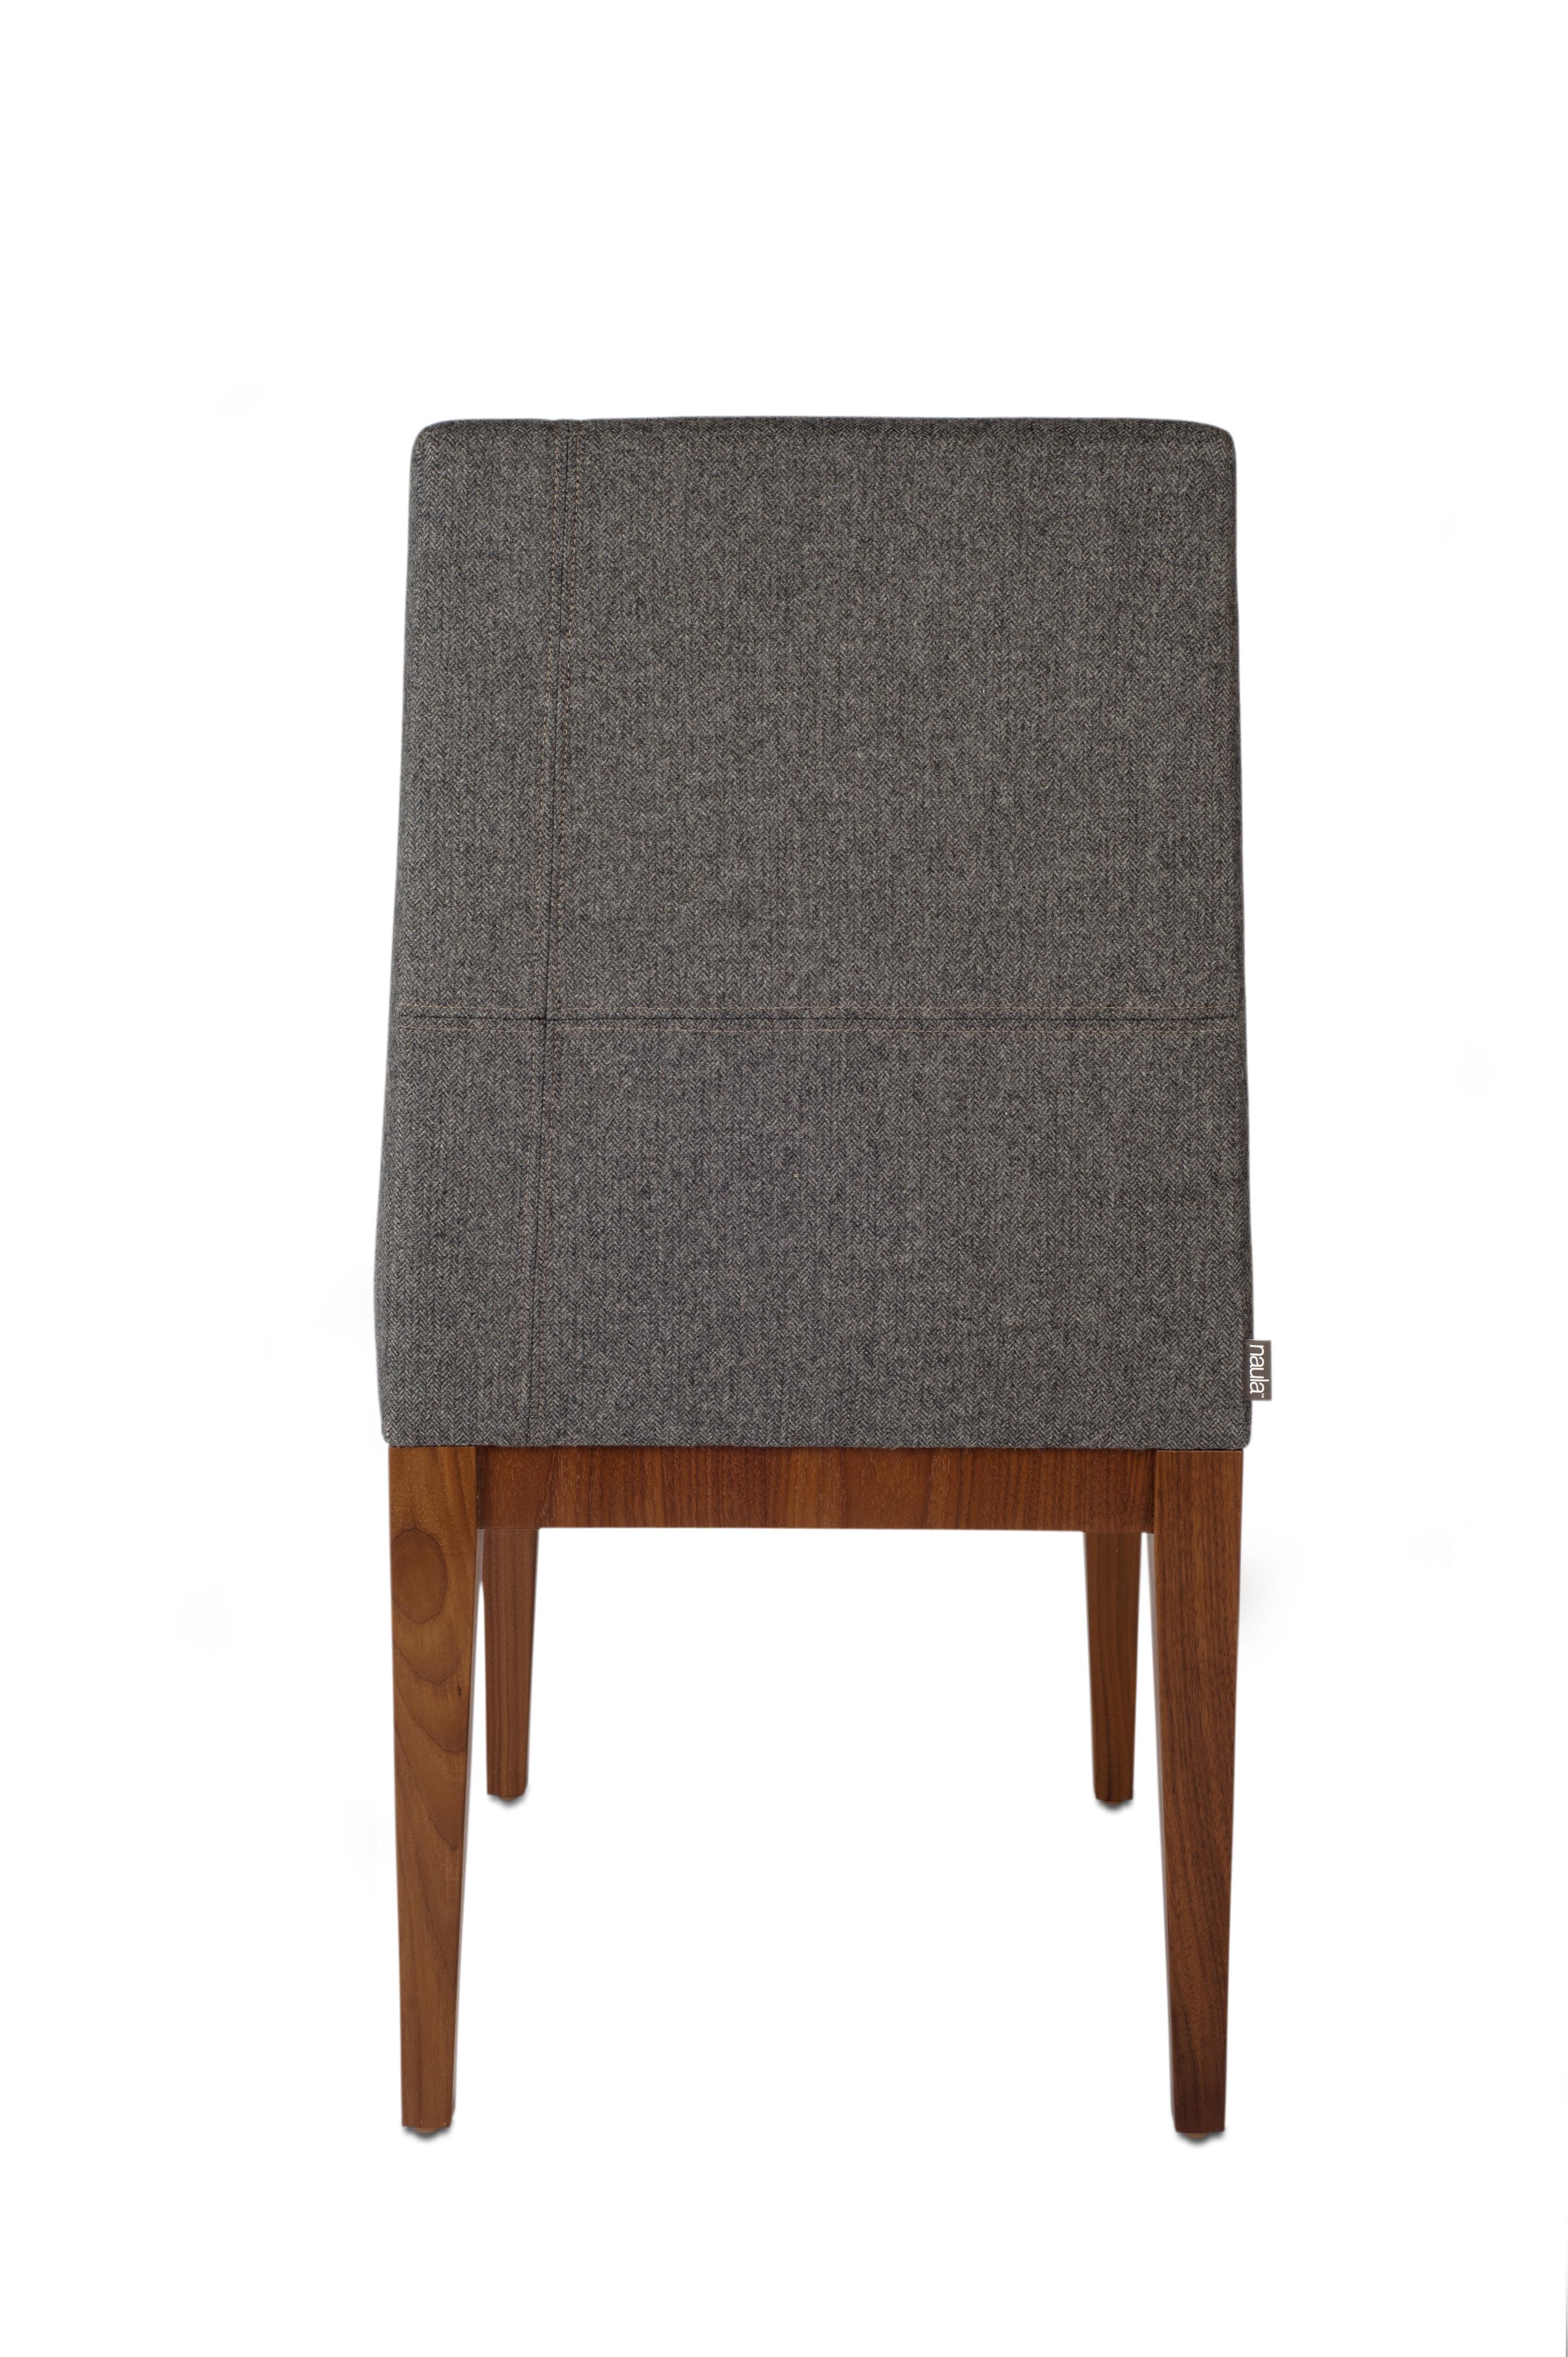 Cette chaise de salle à manger est une combinaison élégante et moderne de tissus d'ameublement et de bois. Elle est équilibrée et minimale. De subtiles coutures décalées à la main rompent la monotonie du tissu et parachèvent un look qui s'adapte à